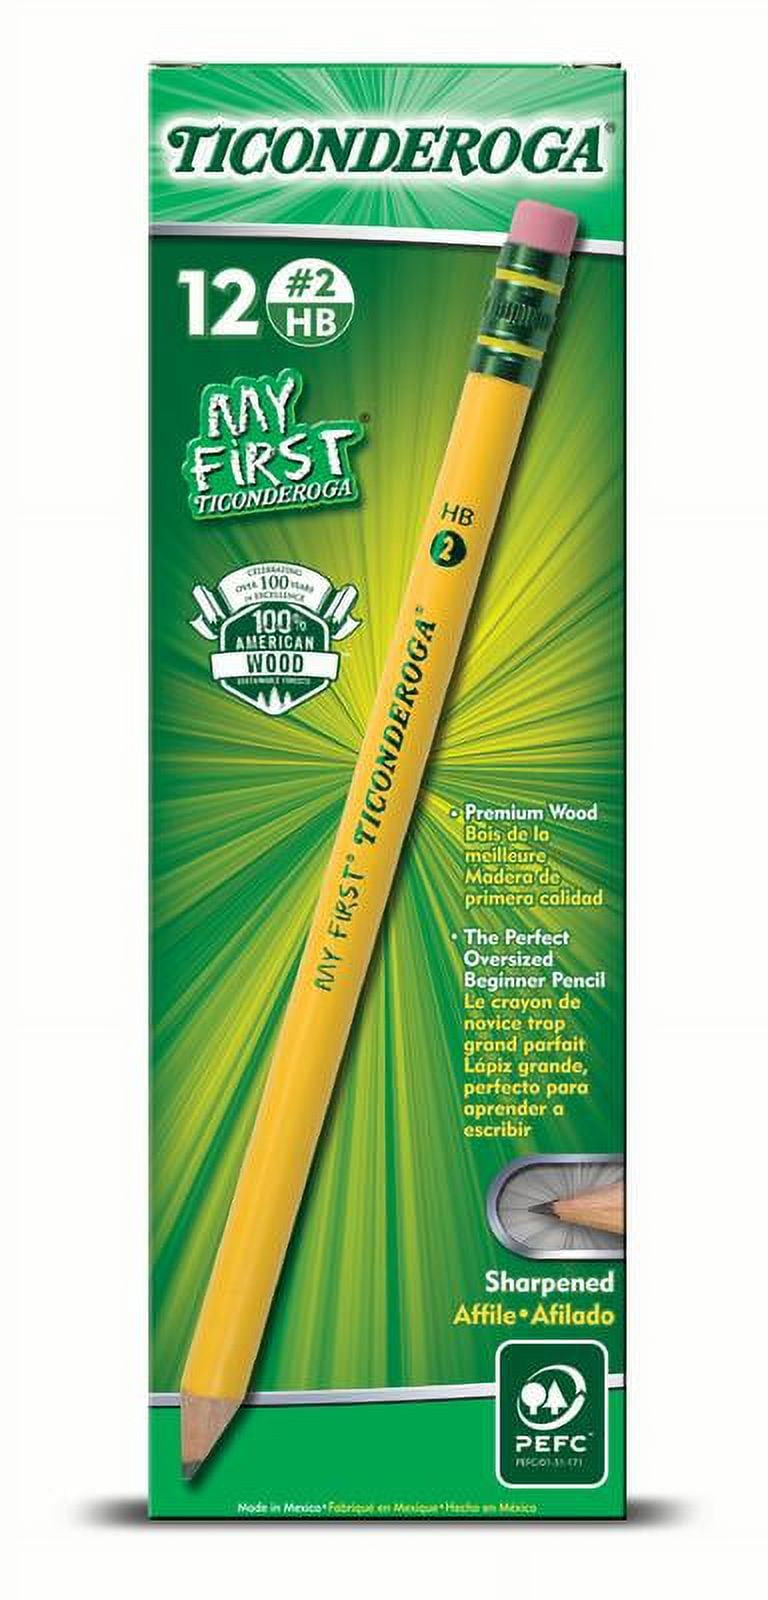 Staedtler Yellow Graphite Pencils Essentials HB #2 - 8 Pack 